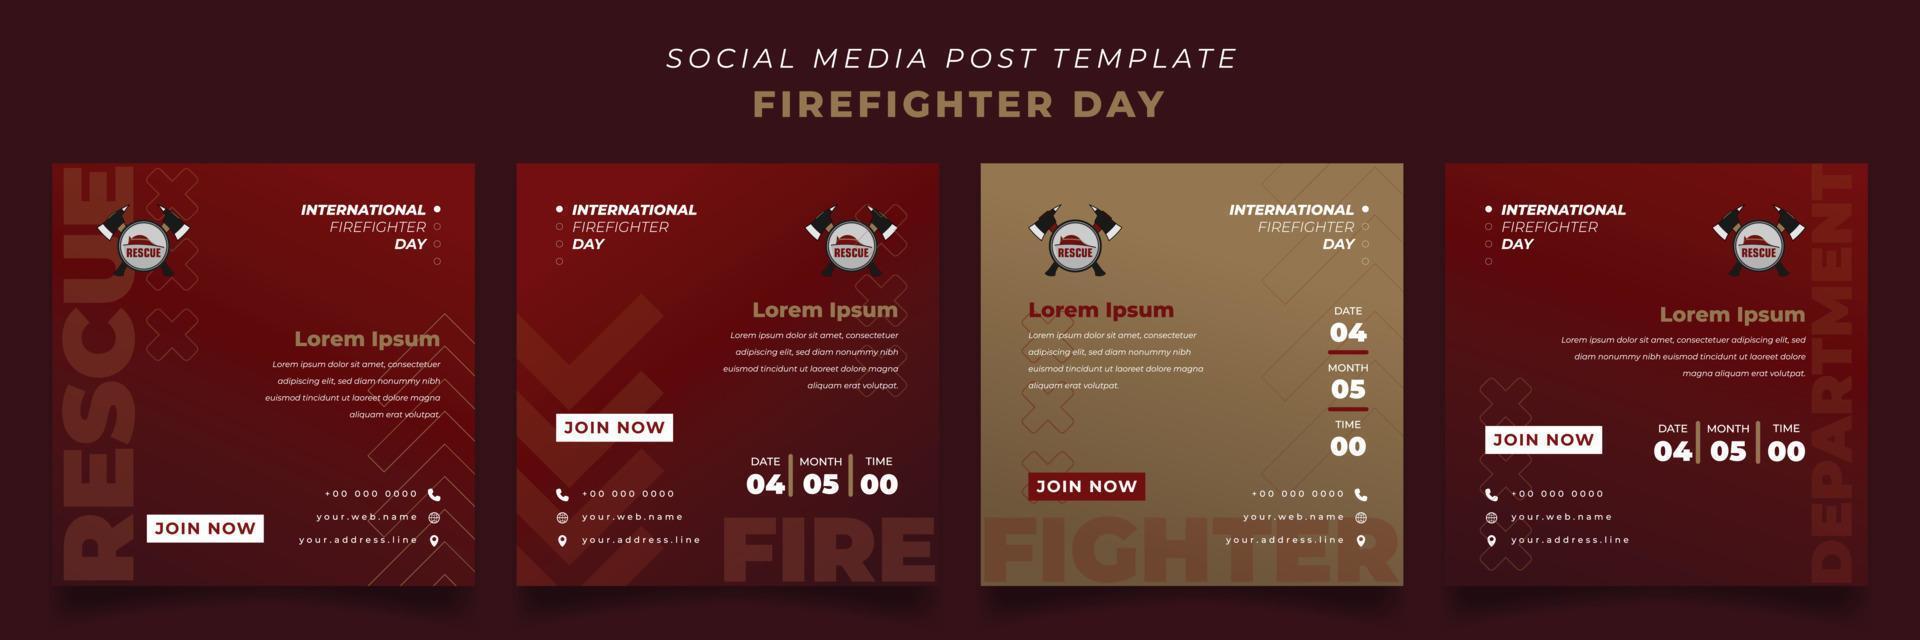 conjunto de plantillas de publicaciones en redes sociales con fondo rojo y dorado para el diseño del día de los bomberos vector